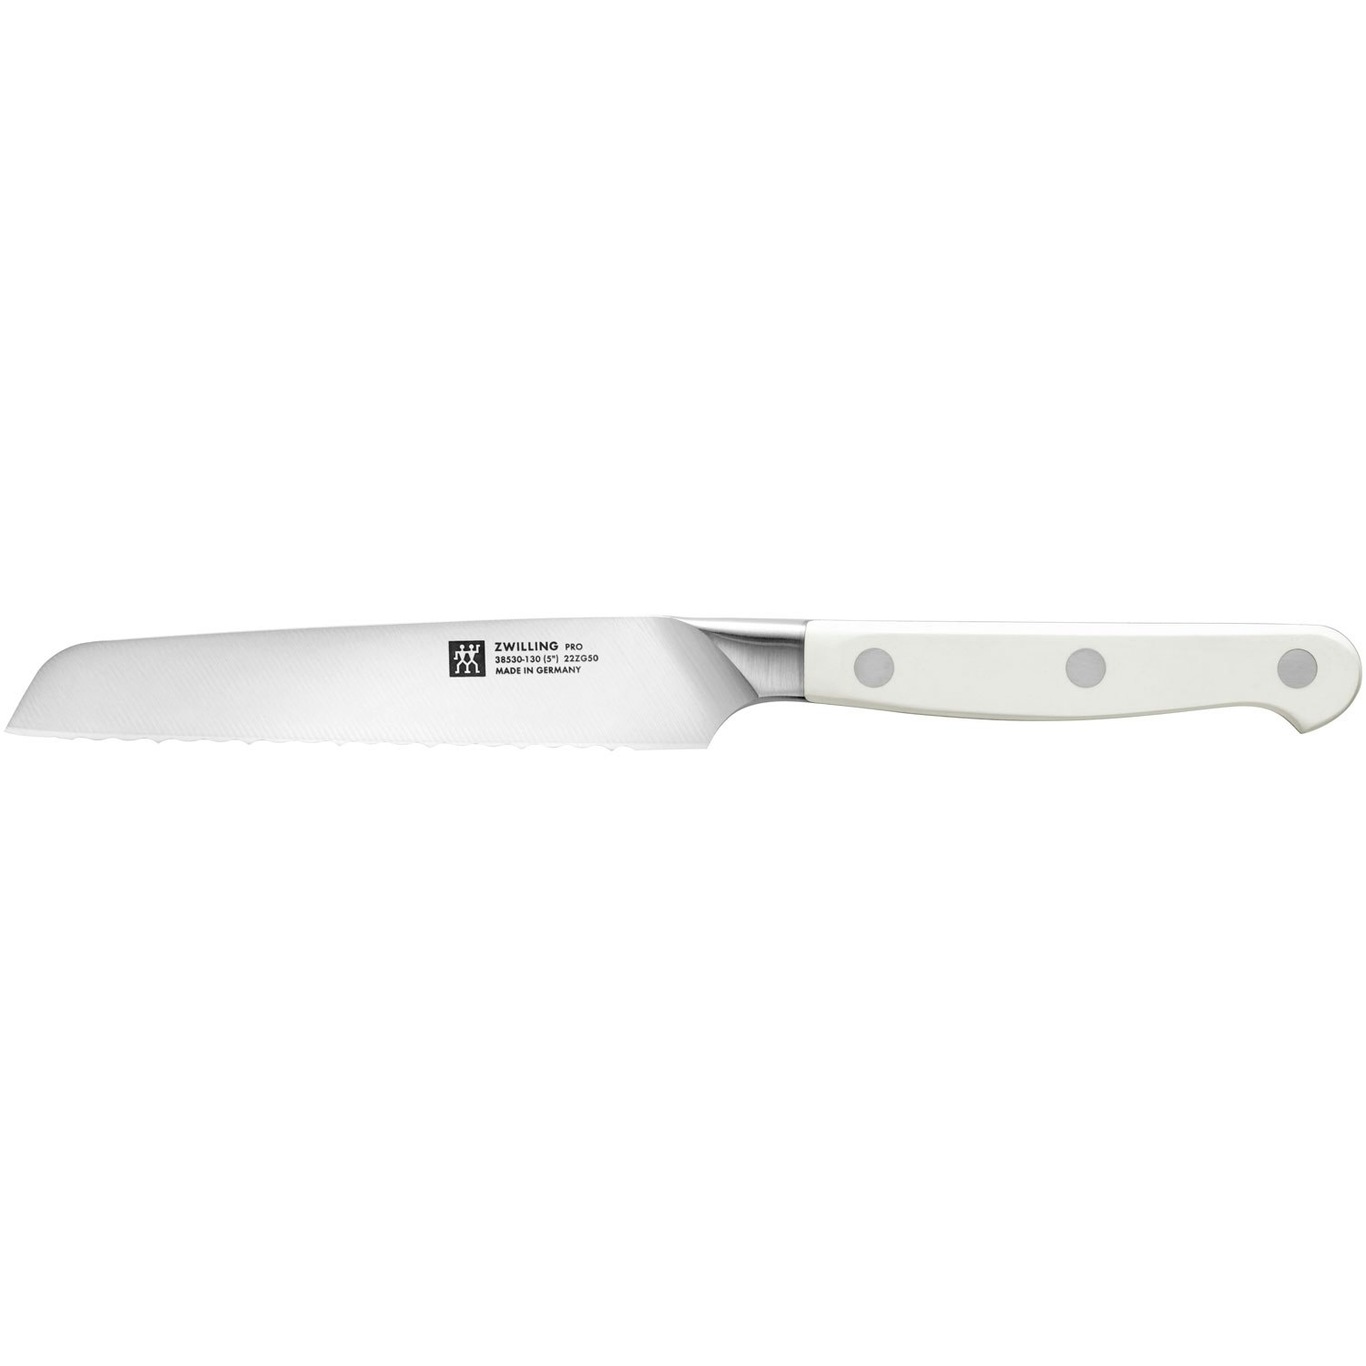 https://royaldesign.com/image/2/zwilling-pro-le-blanc-serrated-utility-knife-13-cm-0?w=800&quality=80